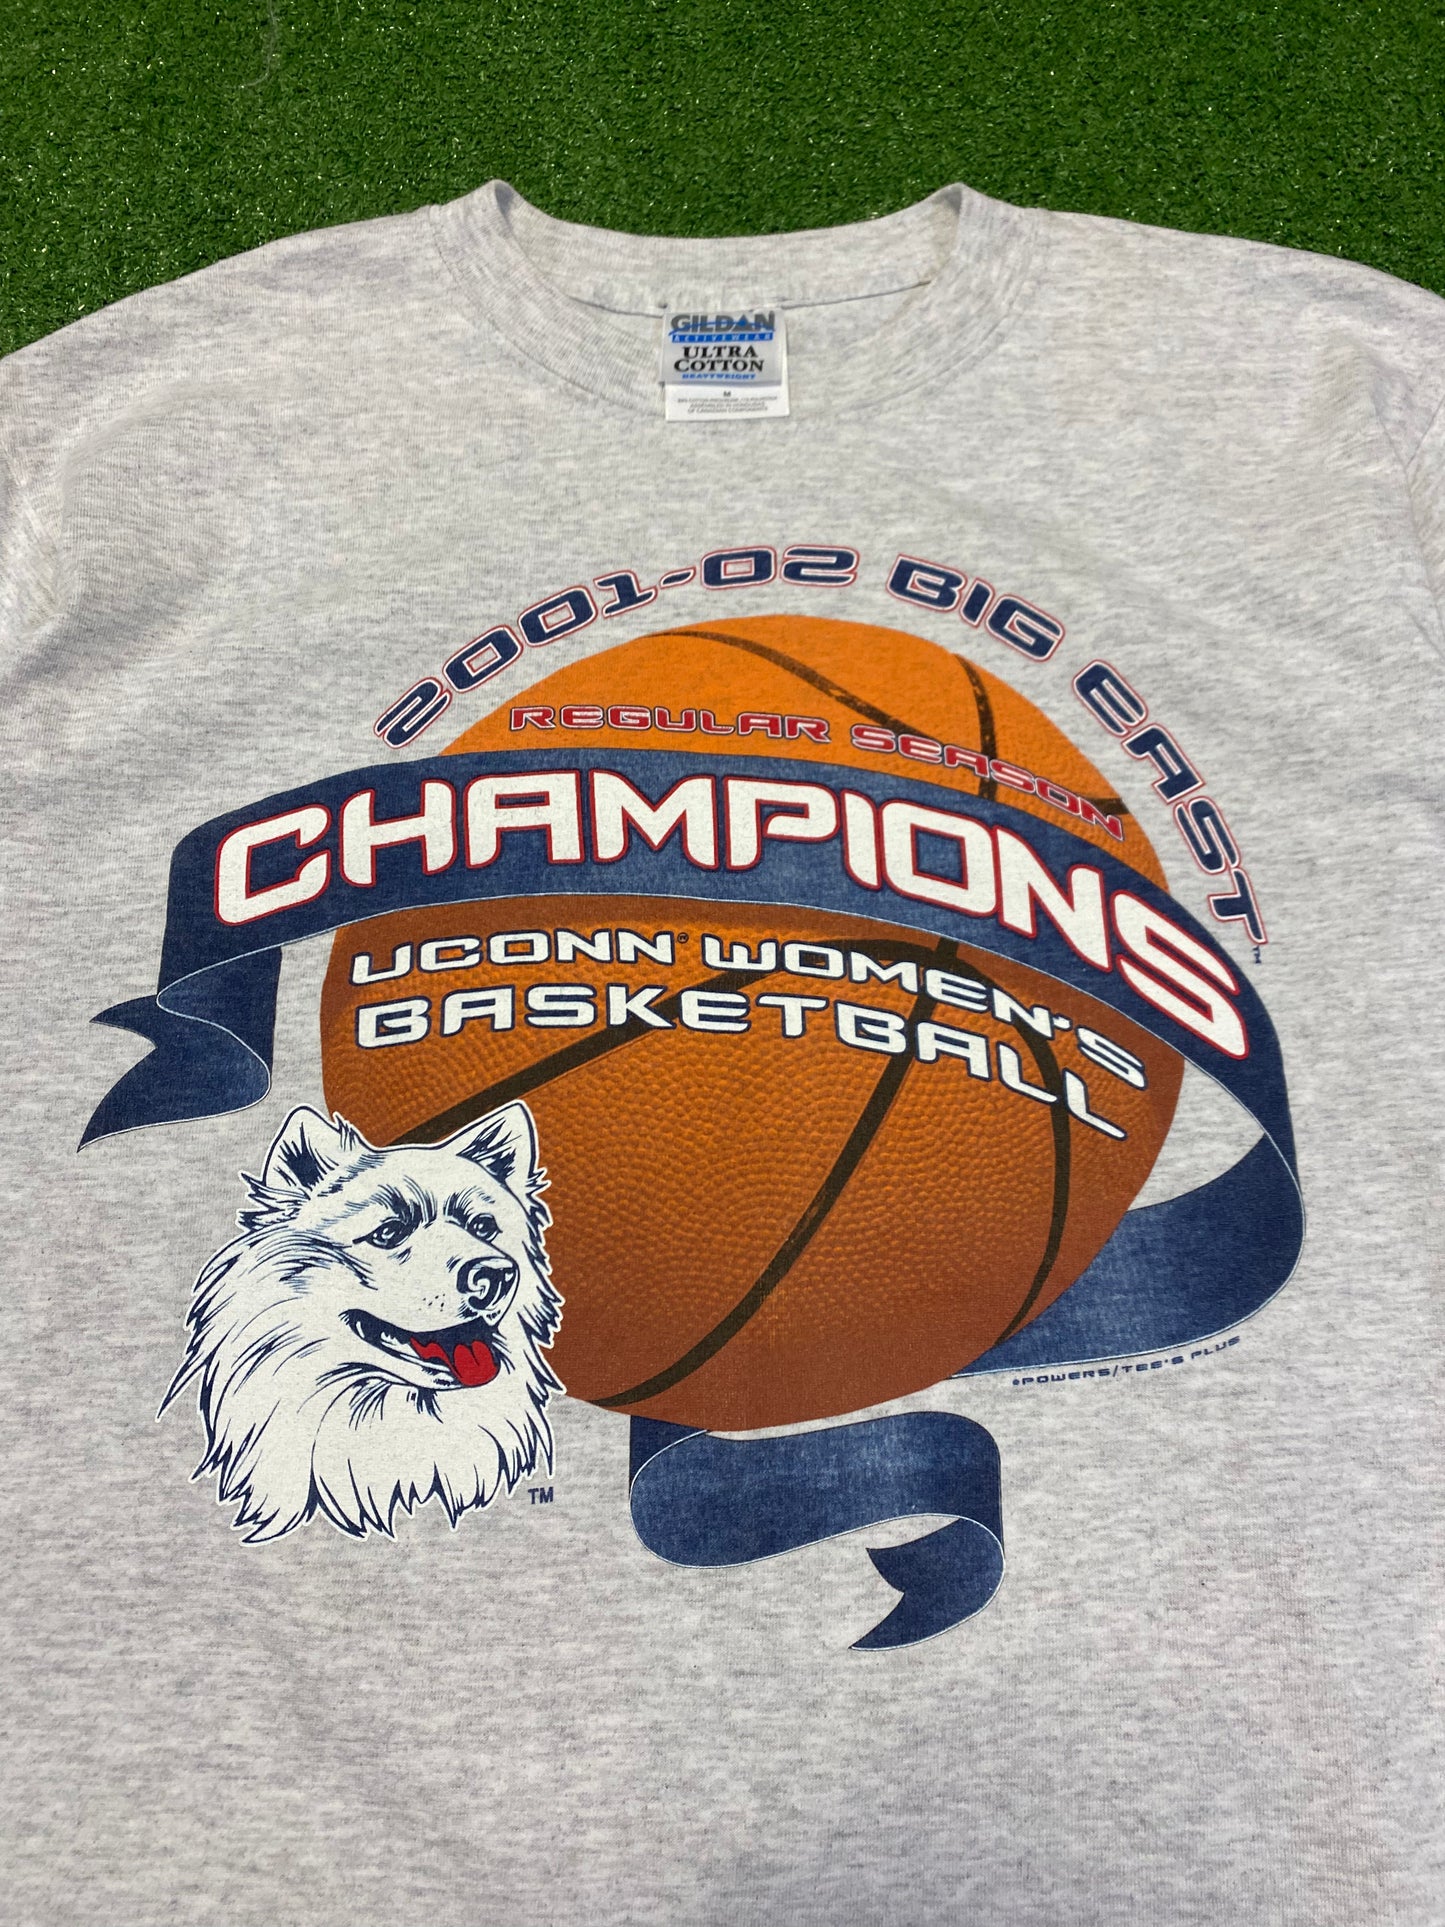 2001-02 Big East Champs UConn Huskies T-Shirt